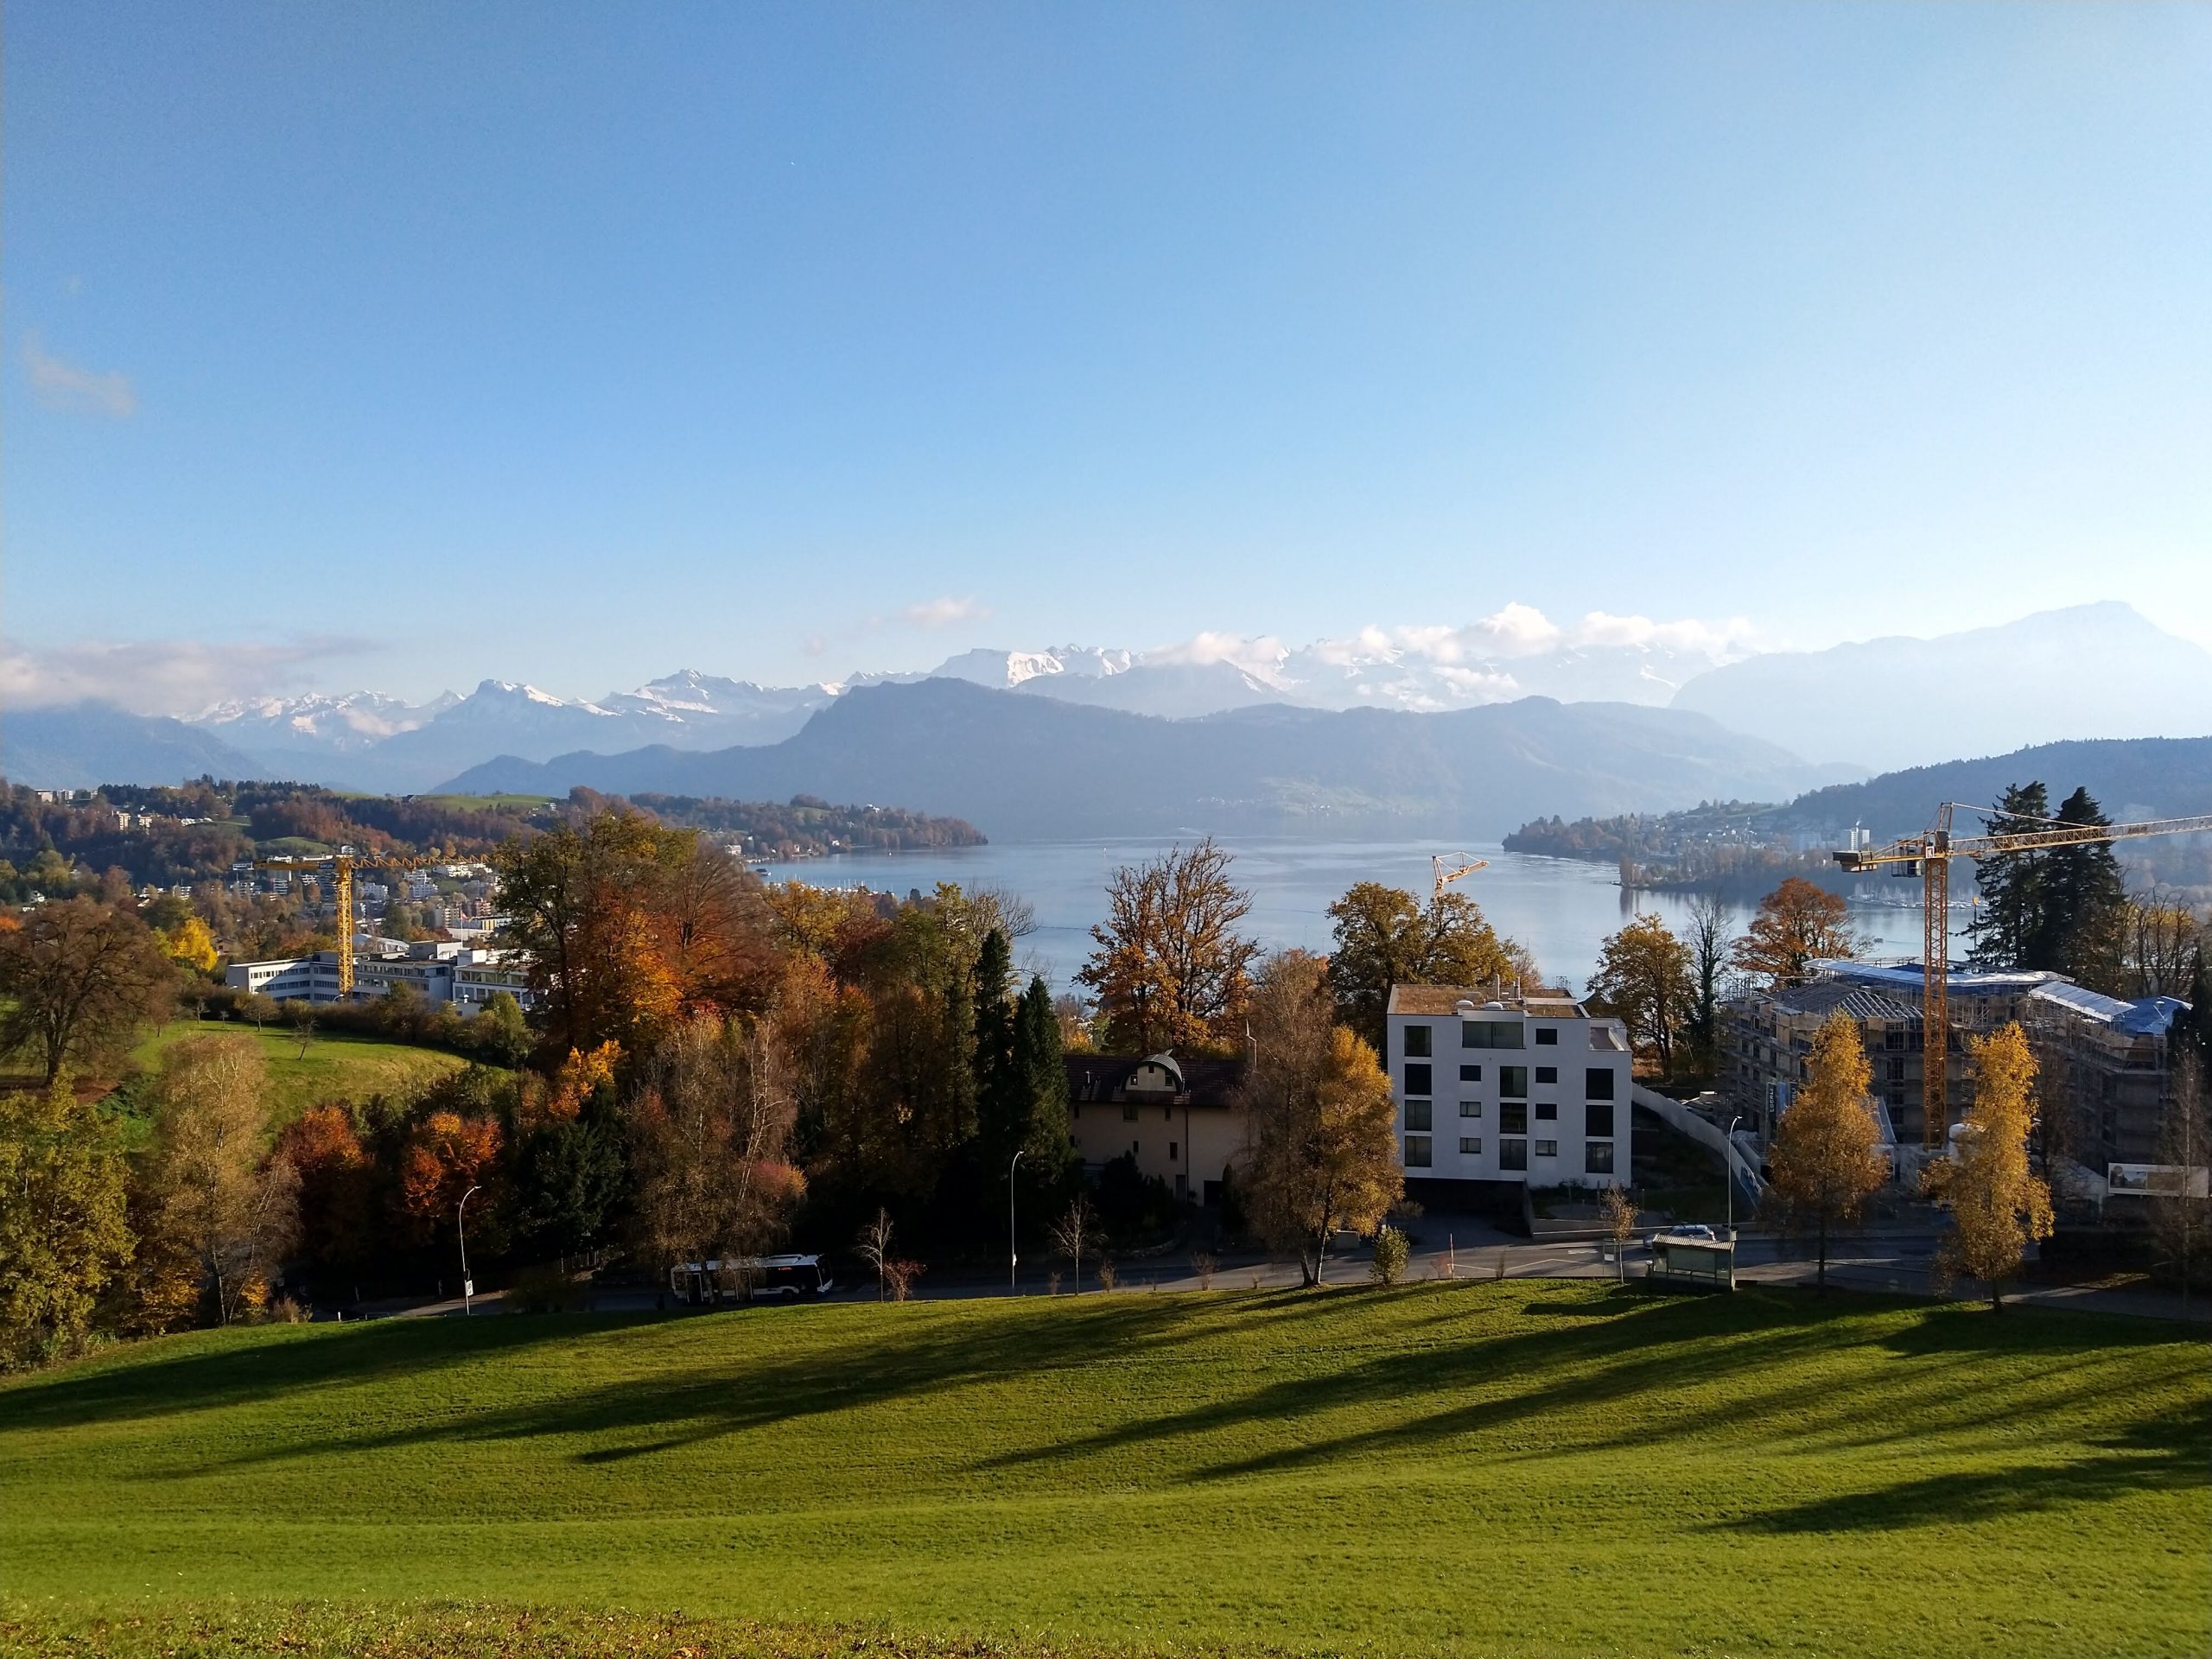 A secondment experience in Zurich, Switzerland